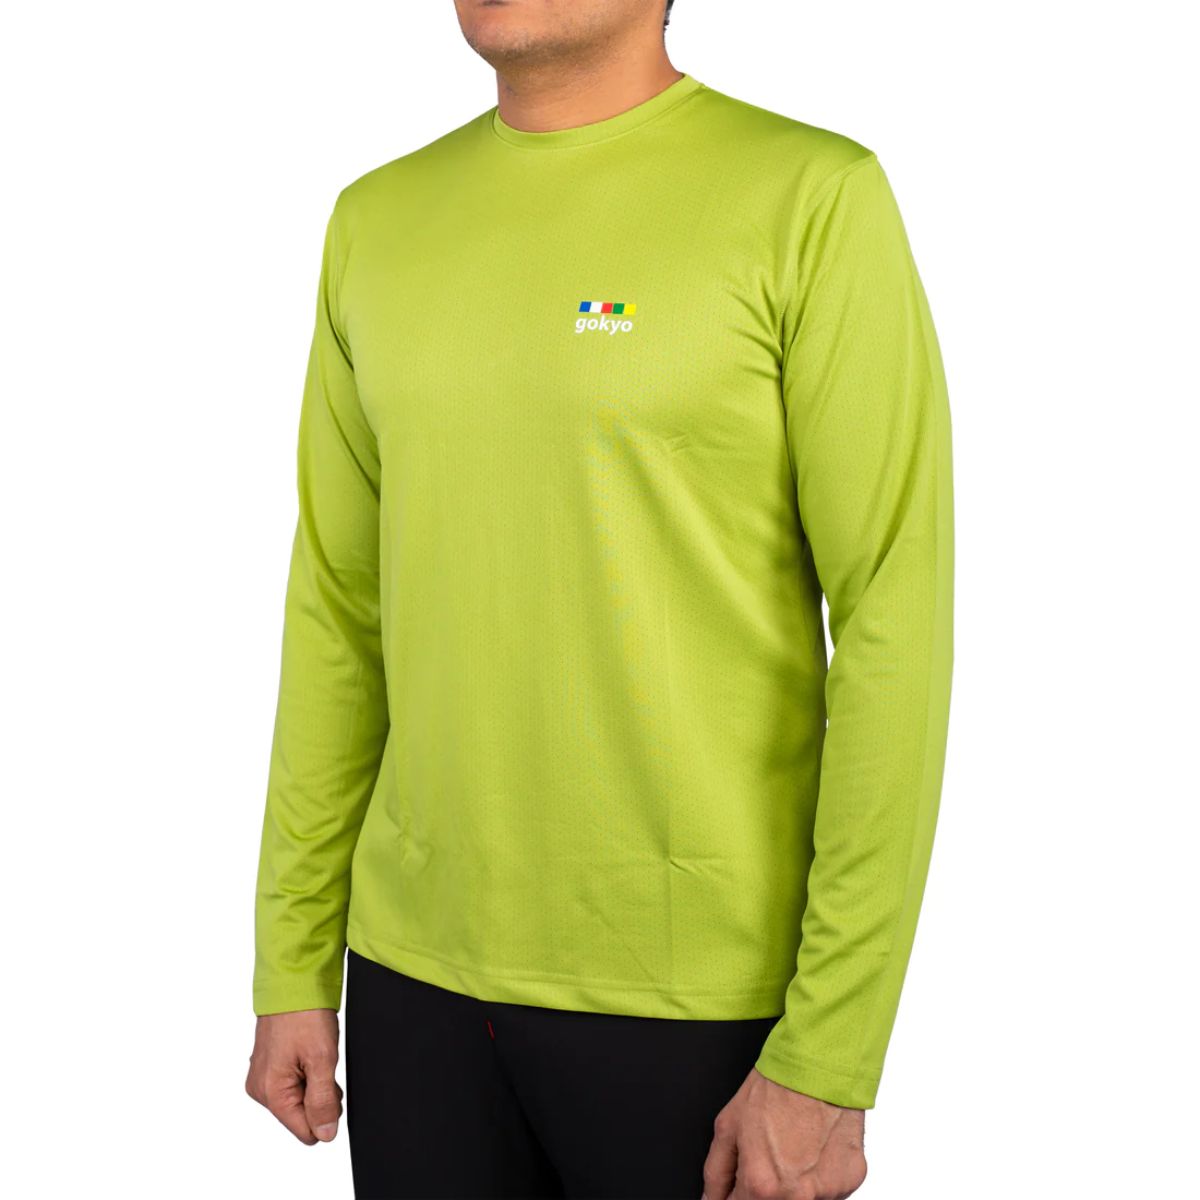 Trekking T-Shirt - Explorer Series - Light Green 2